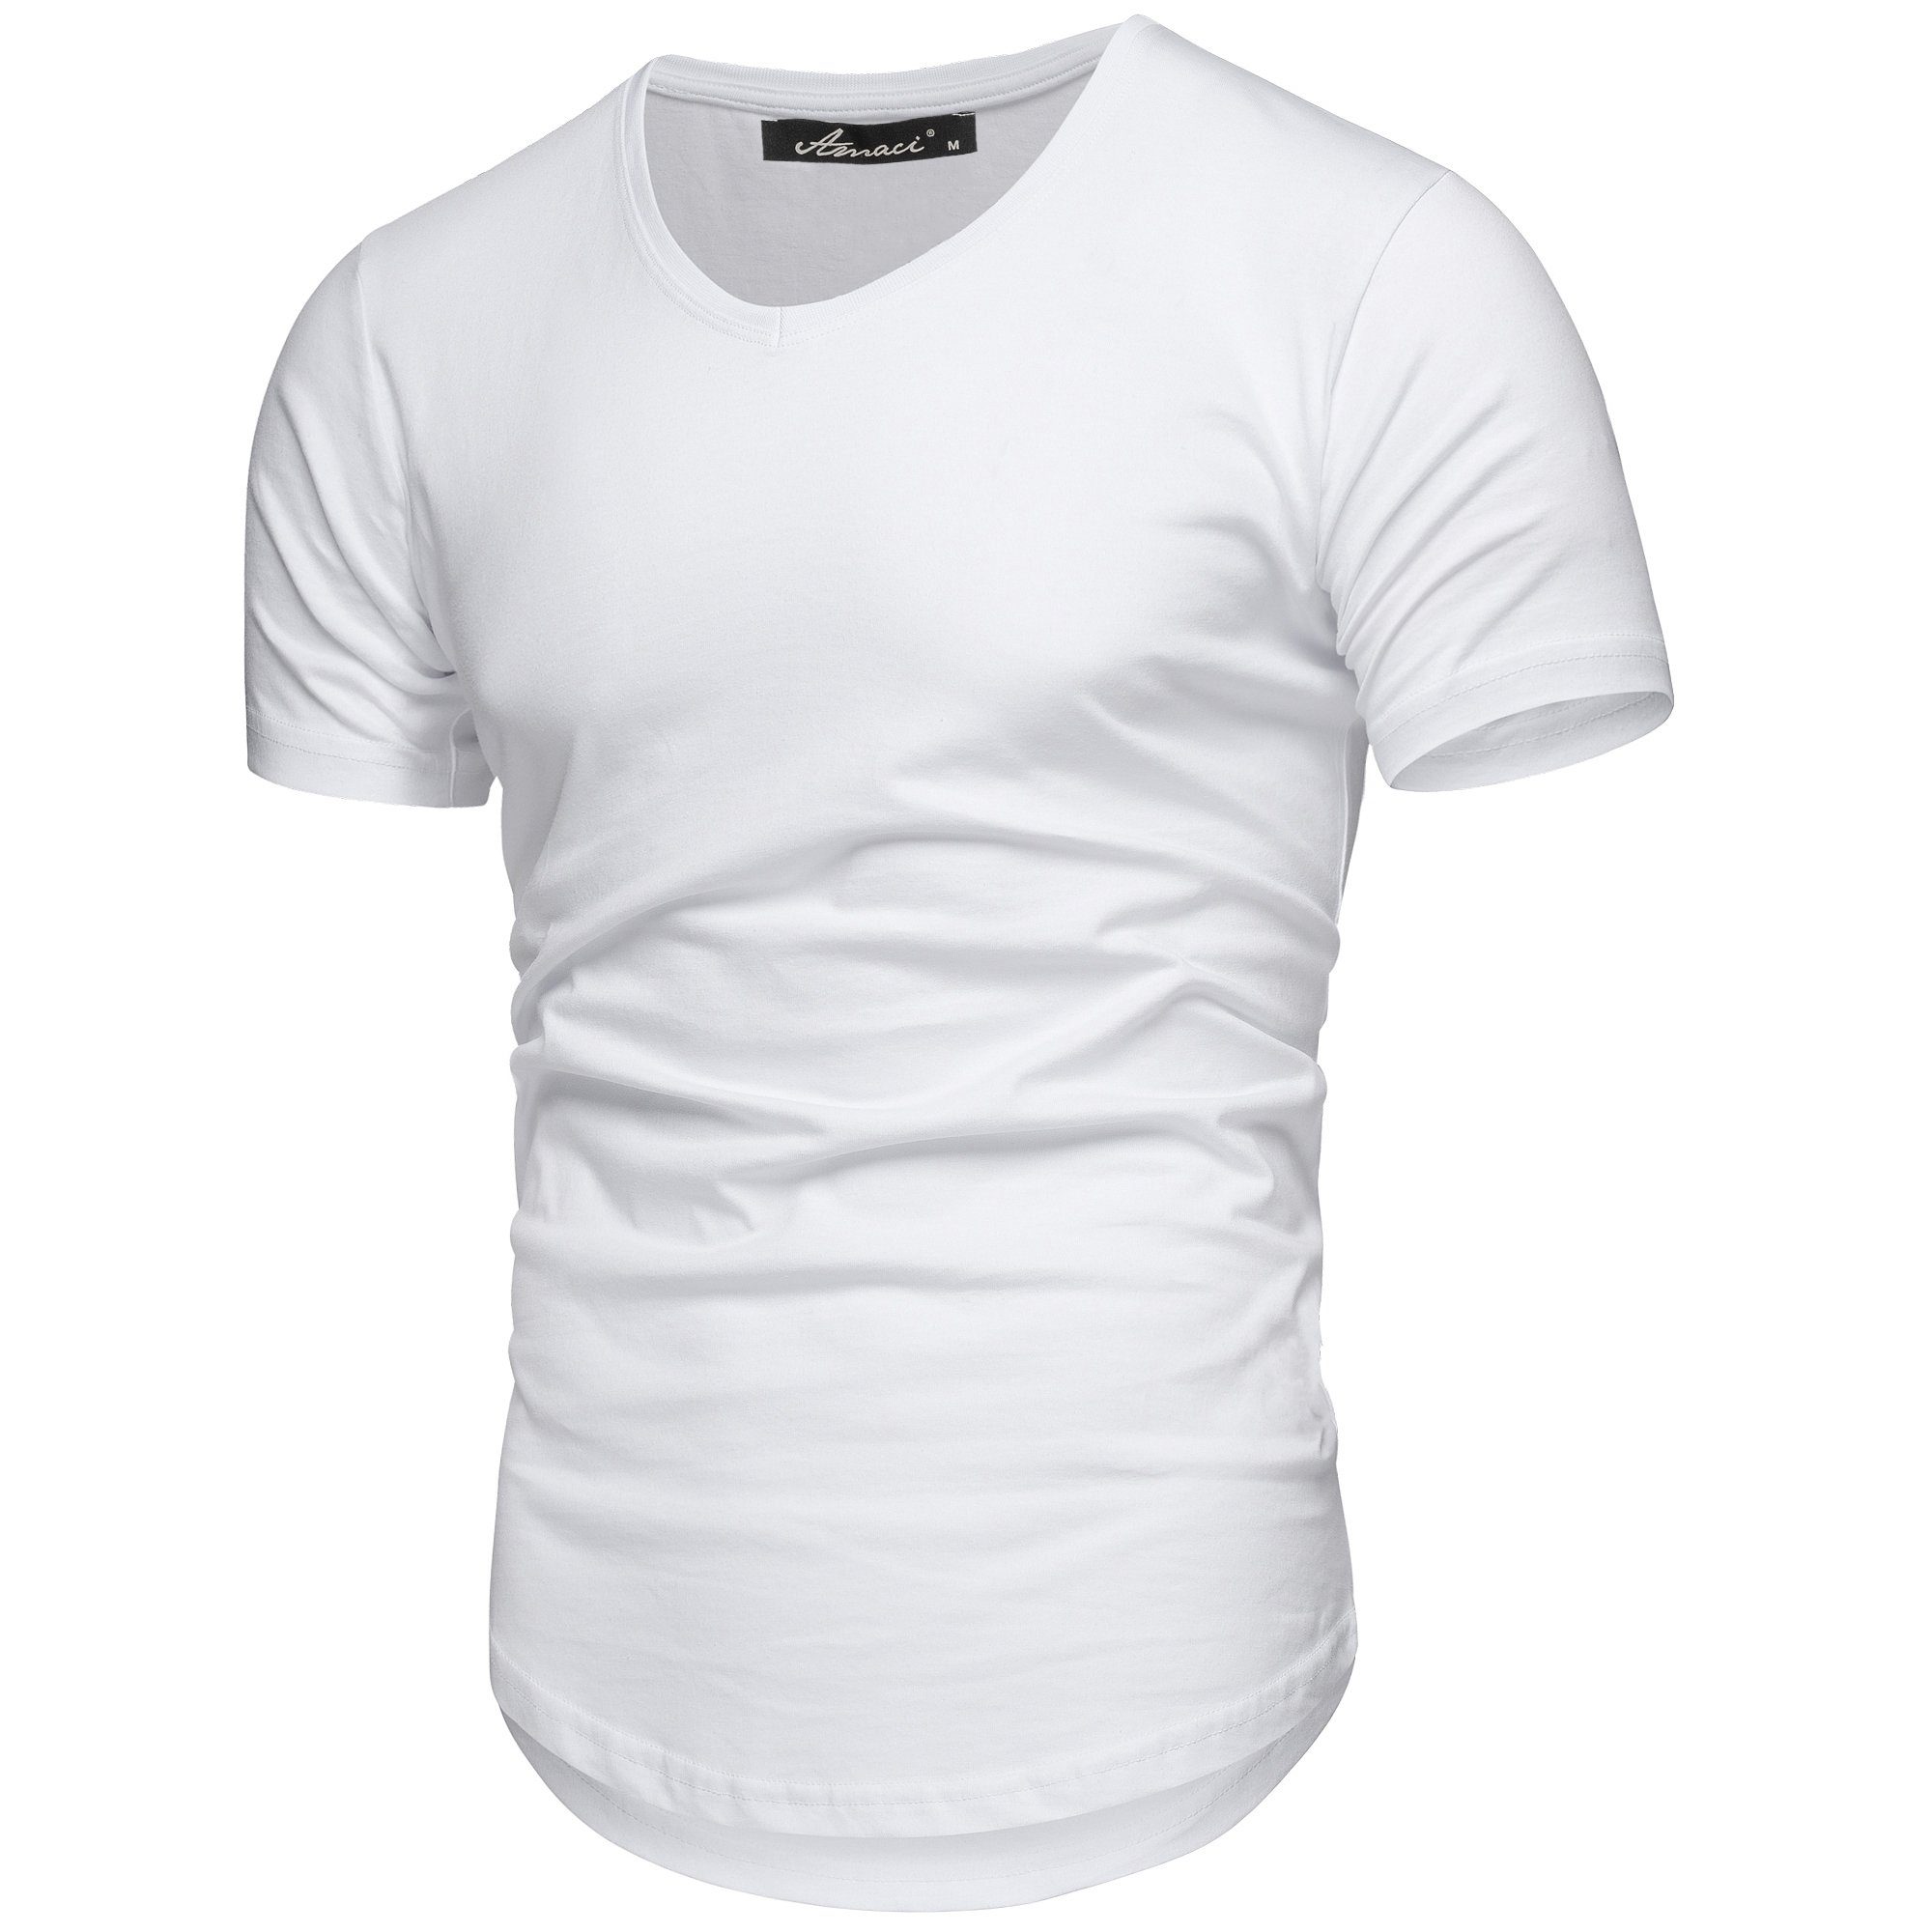 mit BELLEVUE Oversize Weiß T-Shirt Vintage V-Ausschnitt Basic Oversize Basic Herren Amaci&Sons Shirt V-Neck V-Ausschnitt T-Shirt